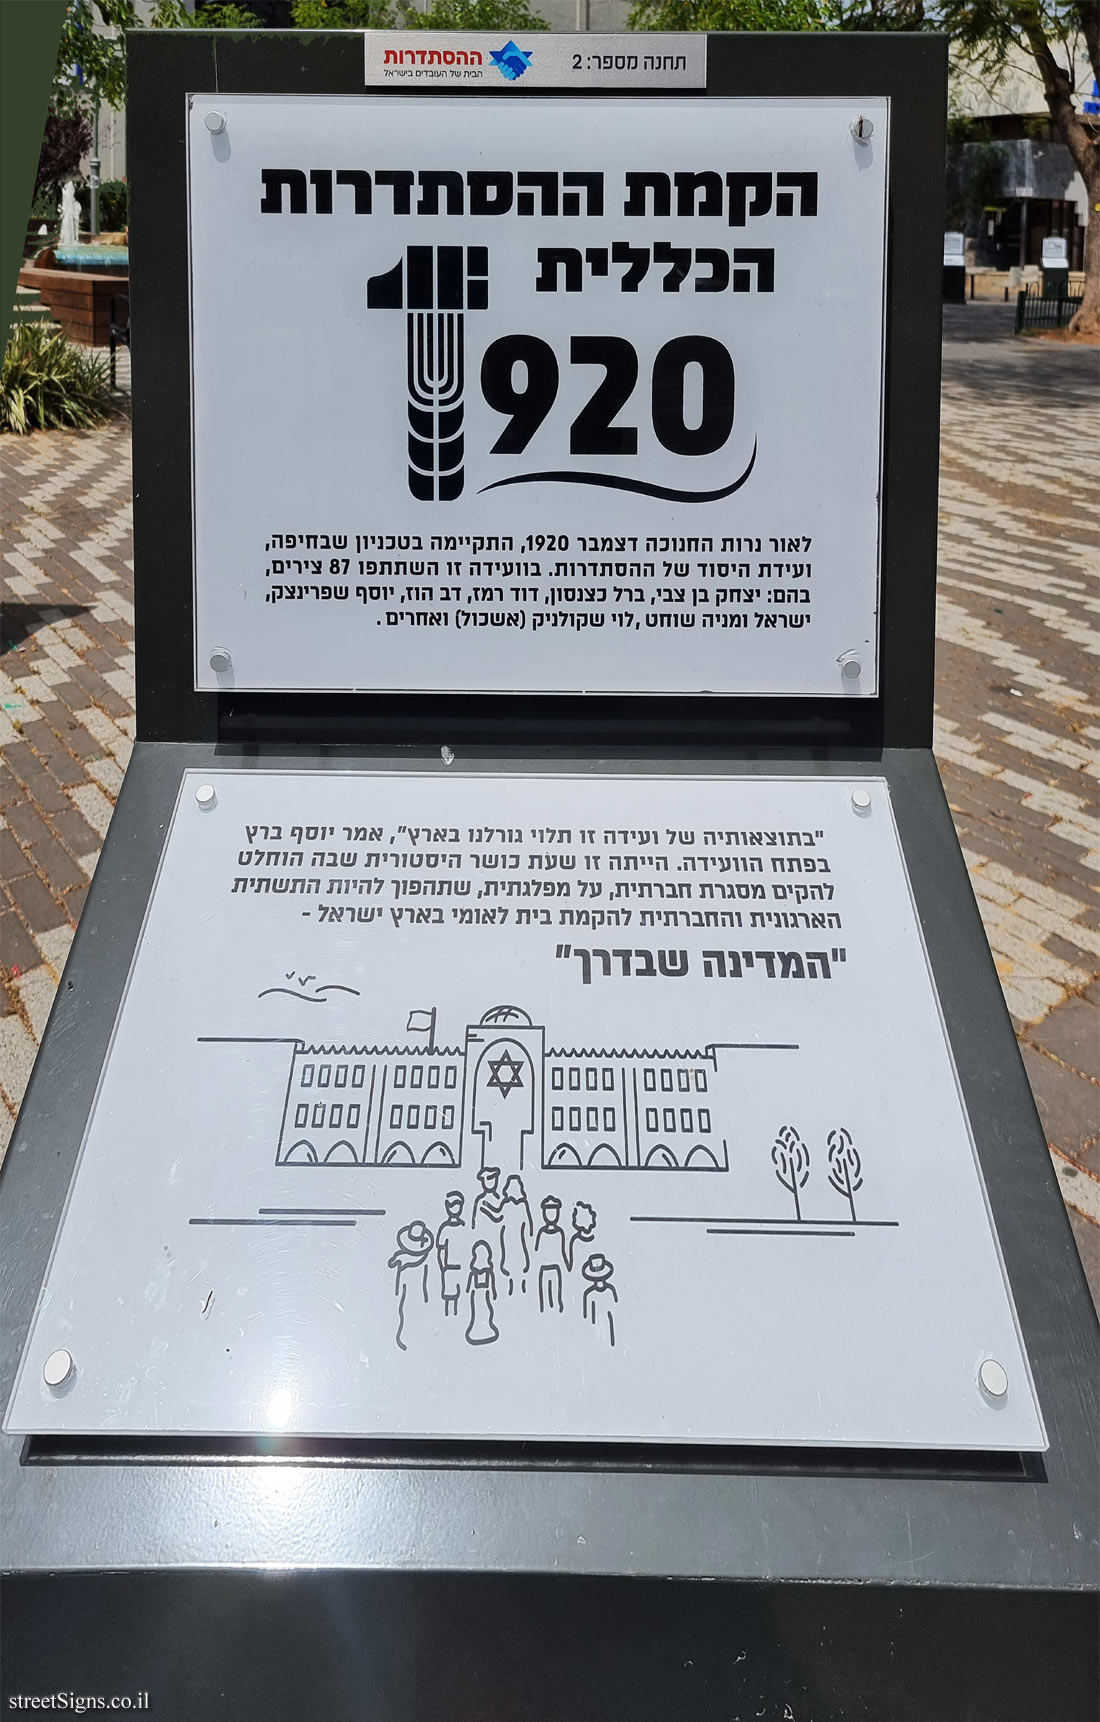 Rishon Lezion - Histadrut Garden - Milestones in the History of the Histadrut - Station 2